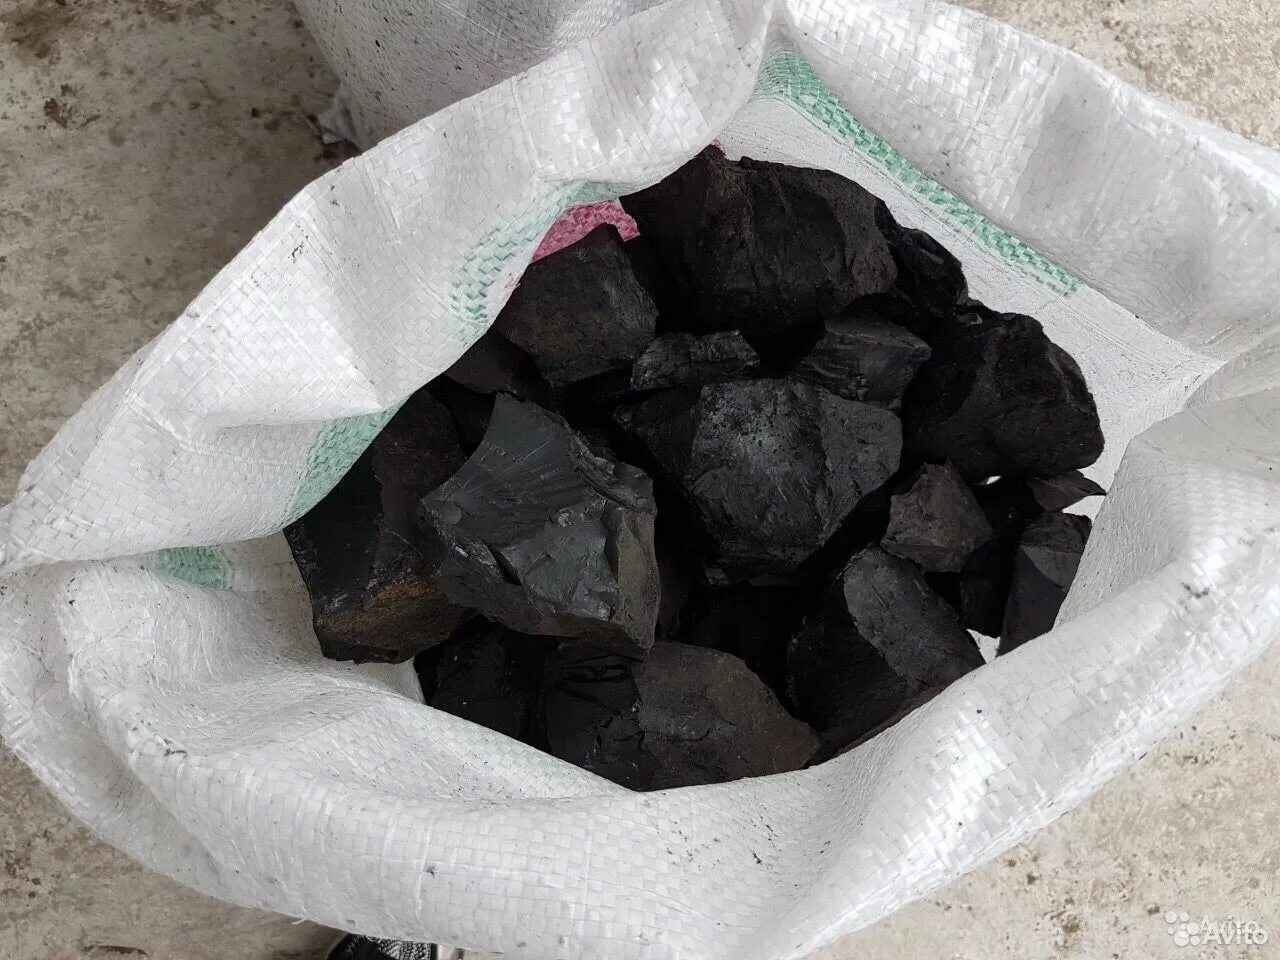 Купить уголь московская область. Уголь в мешках 25 кг. Уголь ДПК мешок 25. Уголь каменный в мешках 25 кг. Древесный уголь в полипропиленовых мешках.